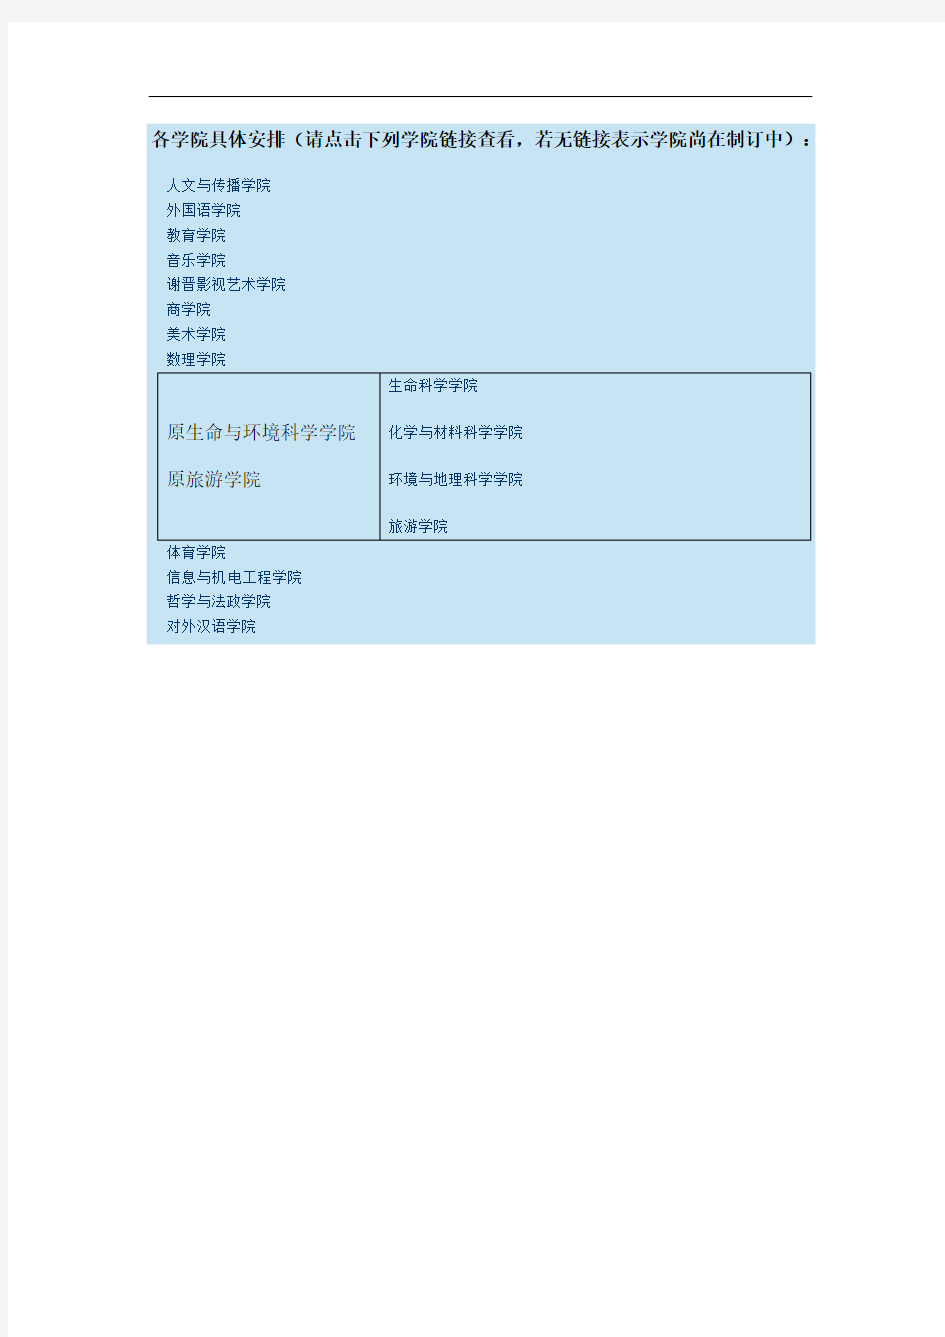 上海师范大学2019年硕士生复试具体安排